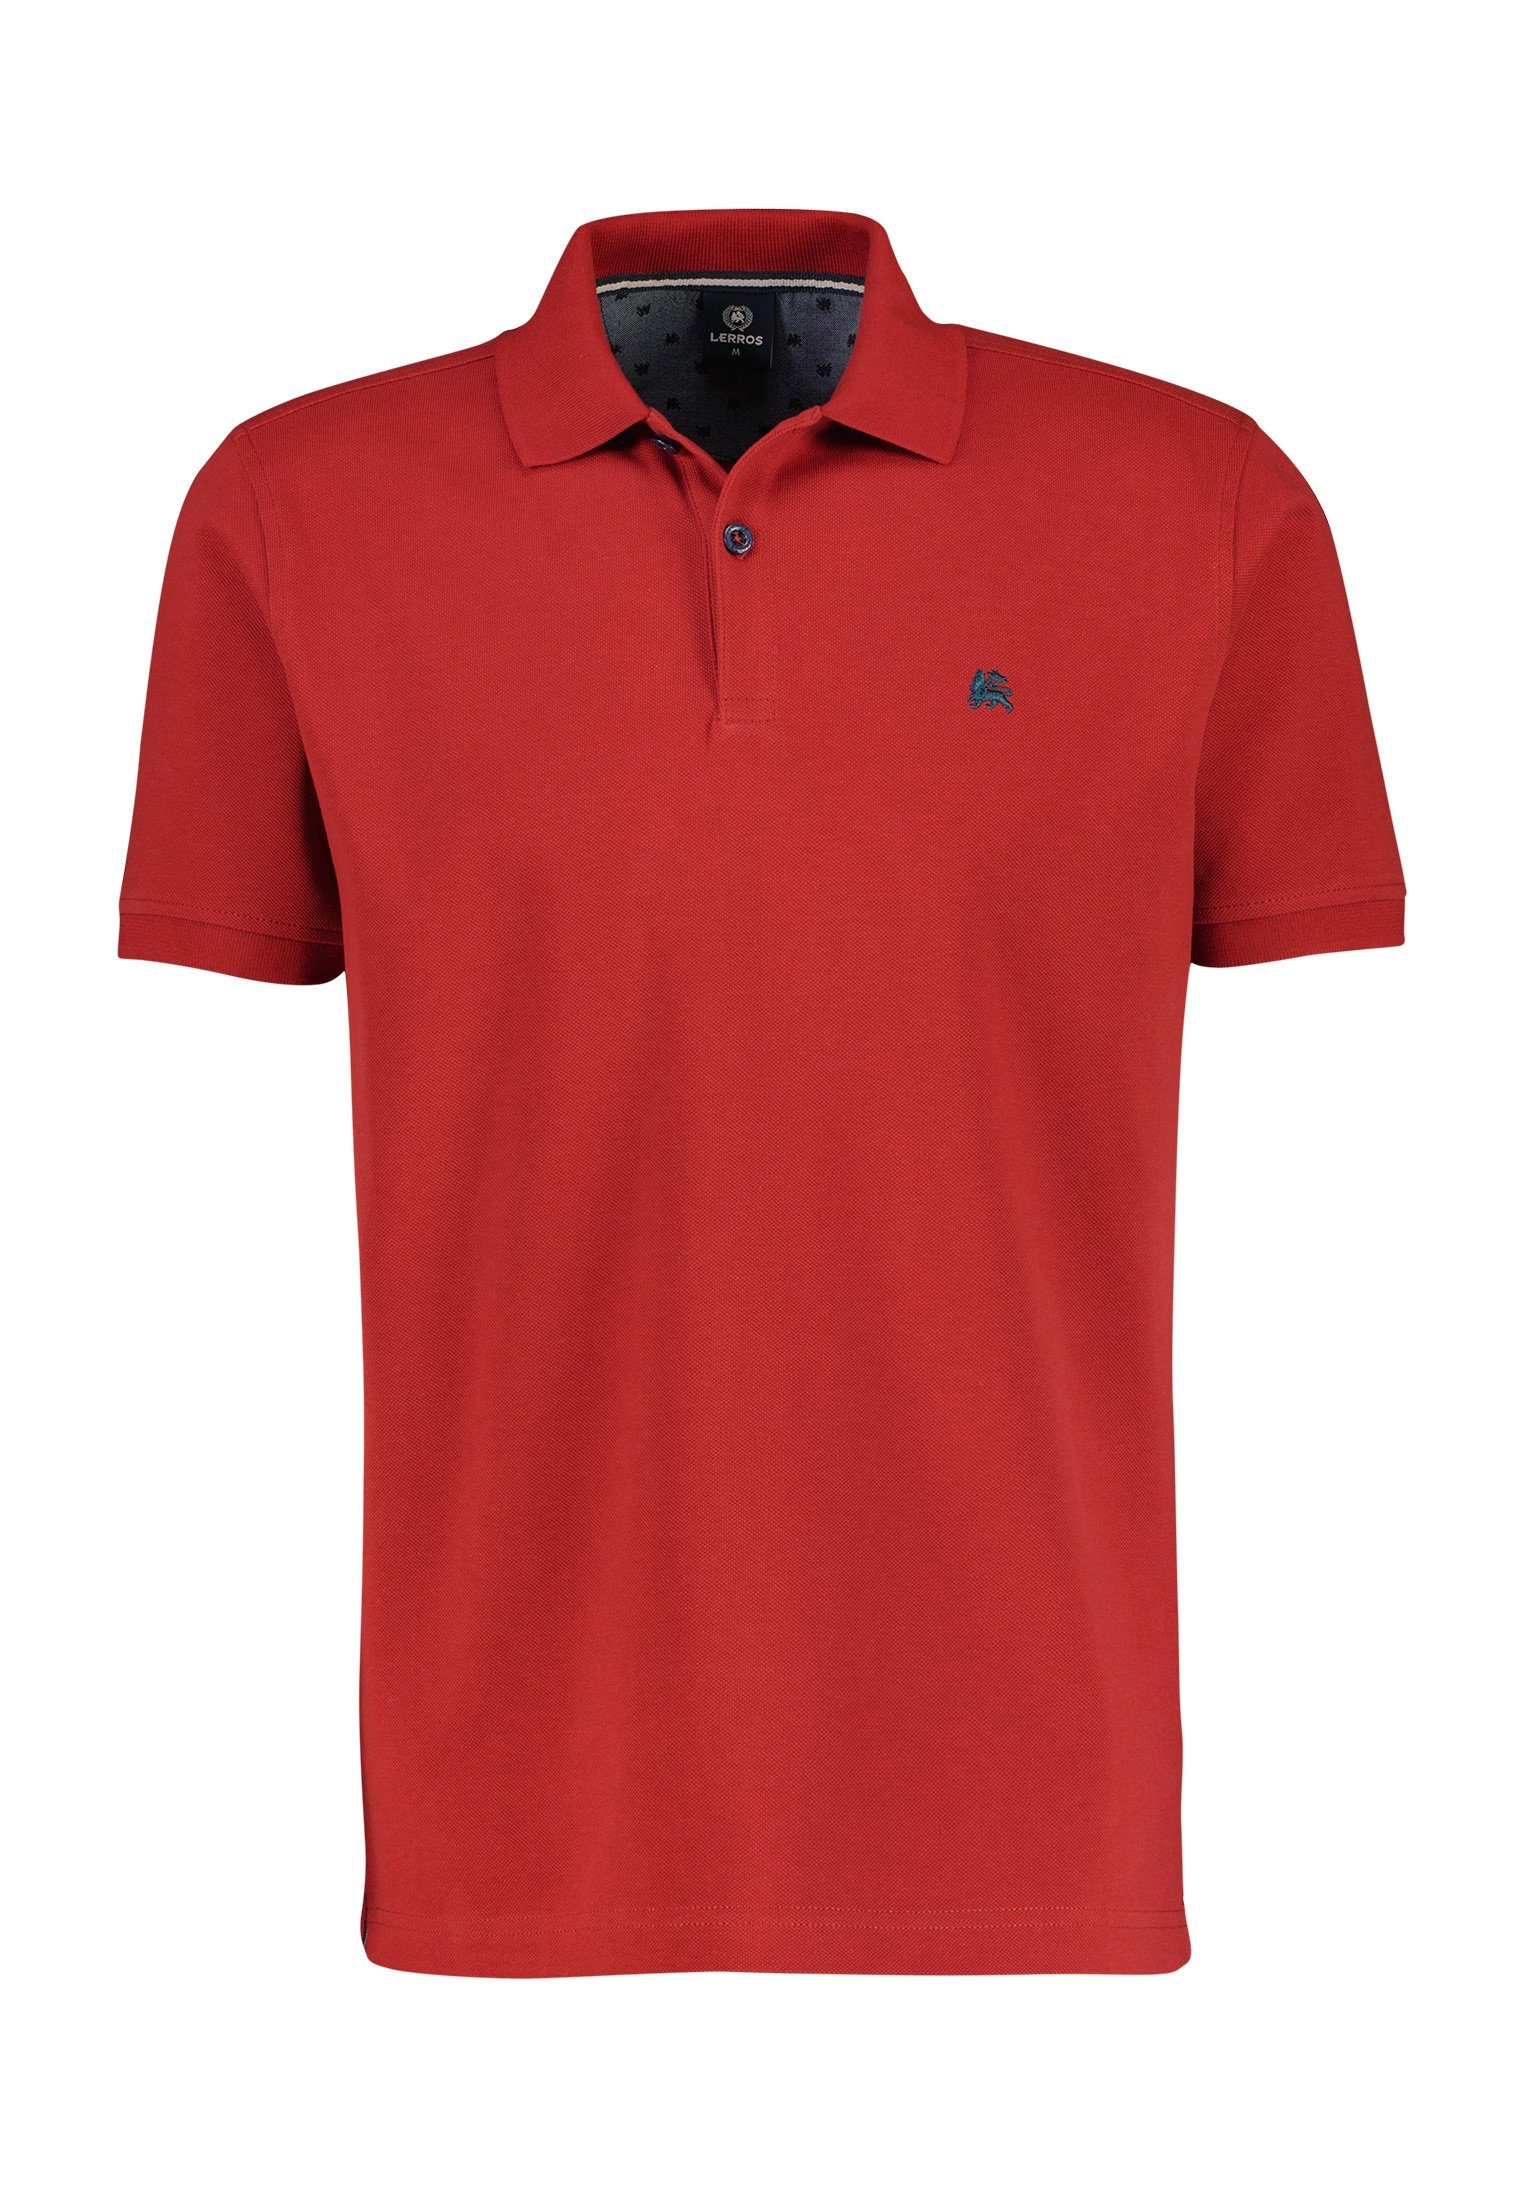 Piqué-Baumwollqualität, hochwertiger LERROS RED BCI Poloshirt in LERROS Poloshirt RUSTY